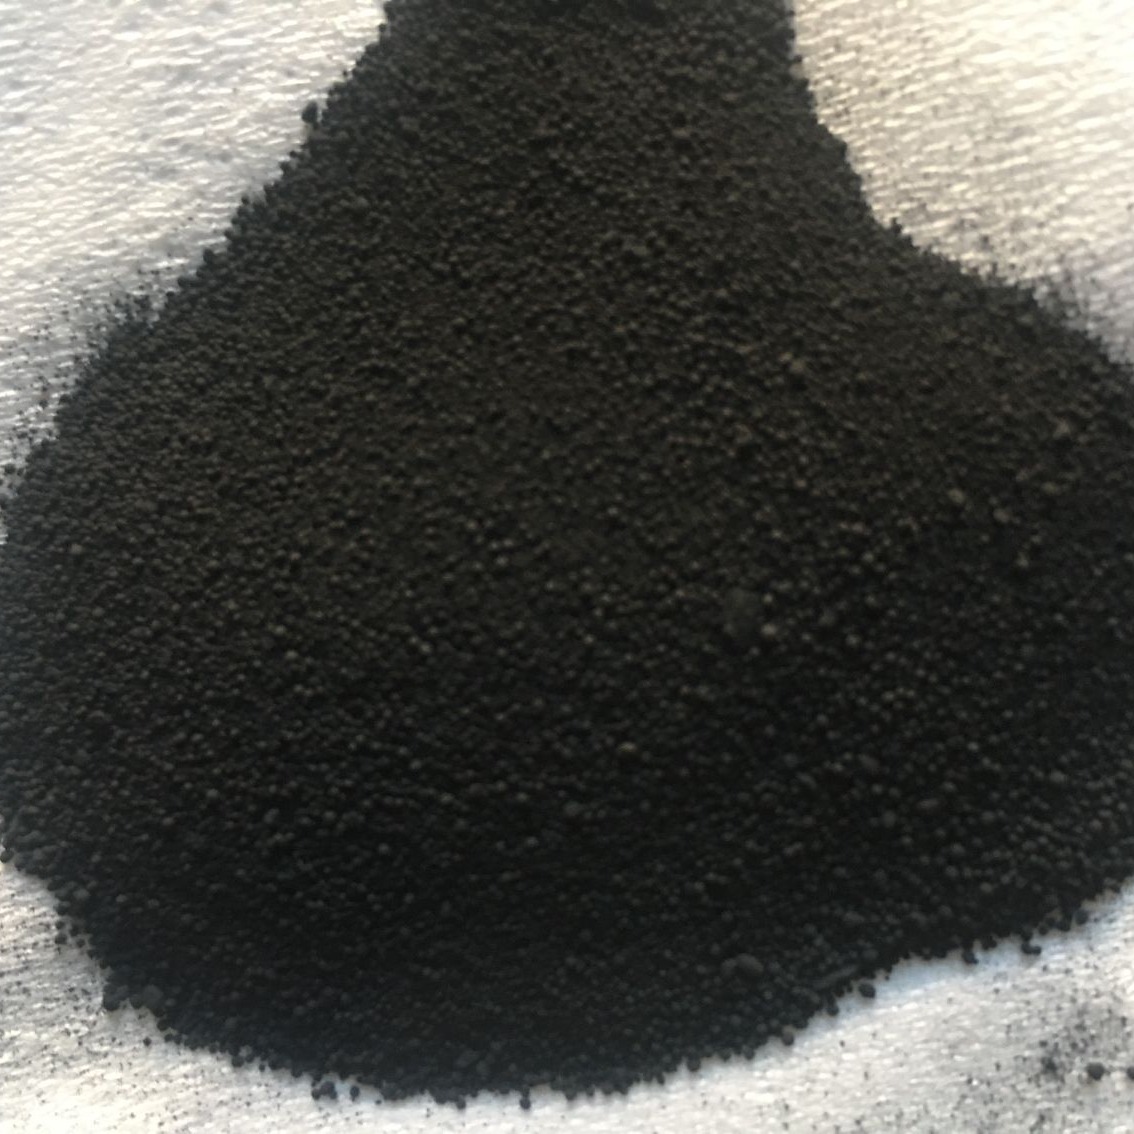 绝缘碳黑 高绝缘碳黑涂料 塑料行业可用 绝缘油墨碳黑 c111 华冉图片